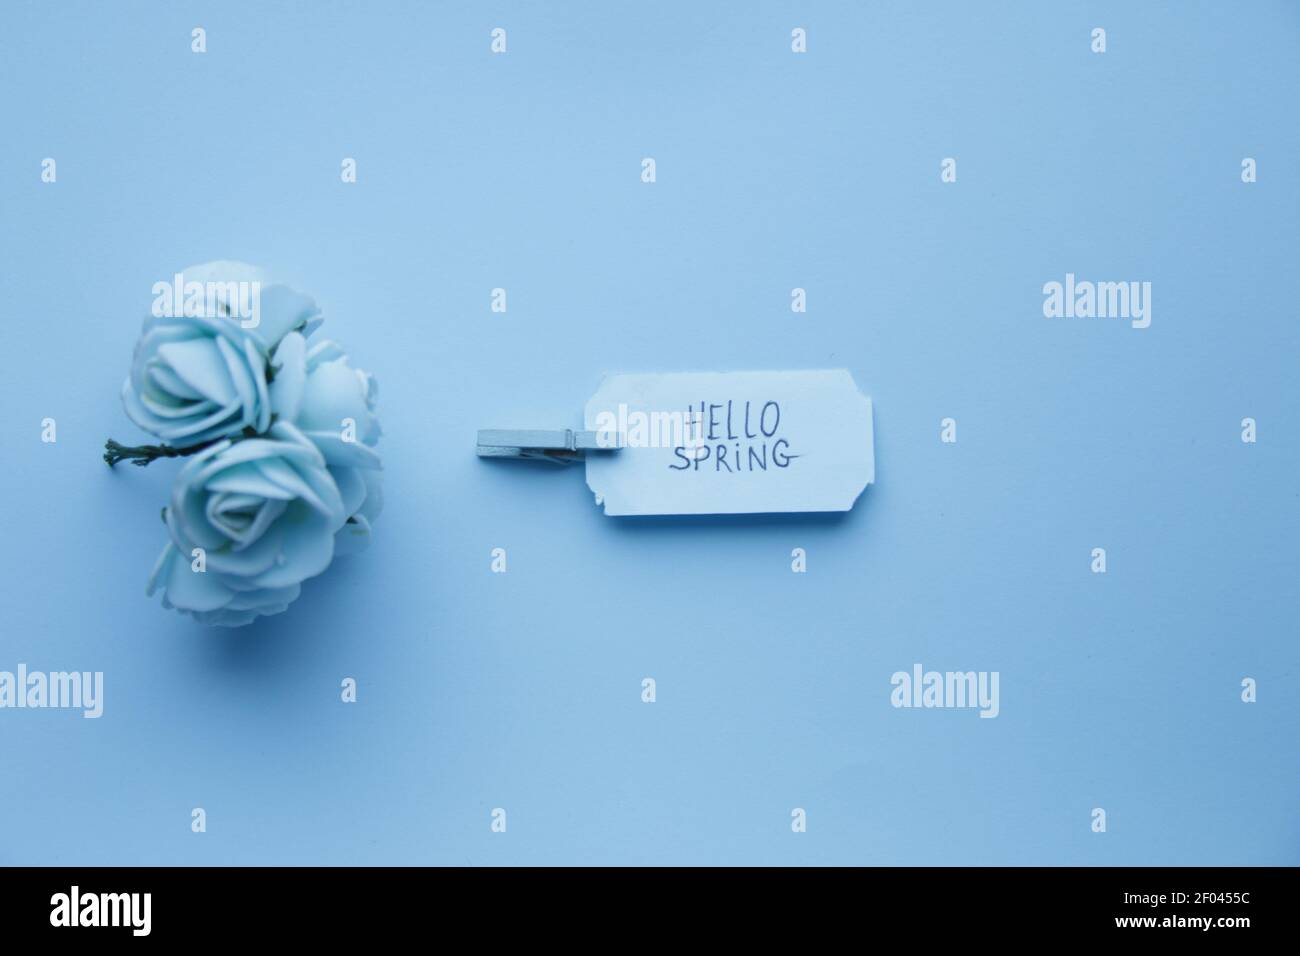 Hallo Frühling. Die Inschrift auf einem blauen Etikett auf einem blauen Hintergrund. Stockfoto